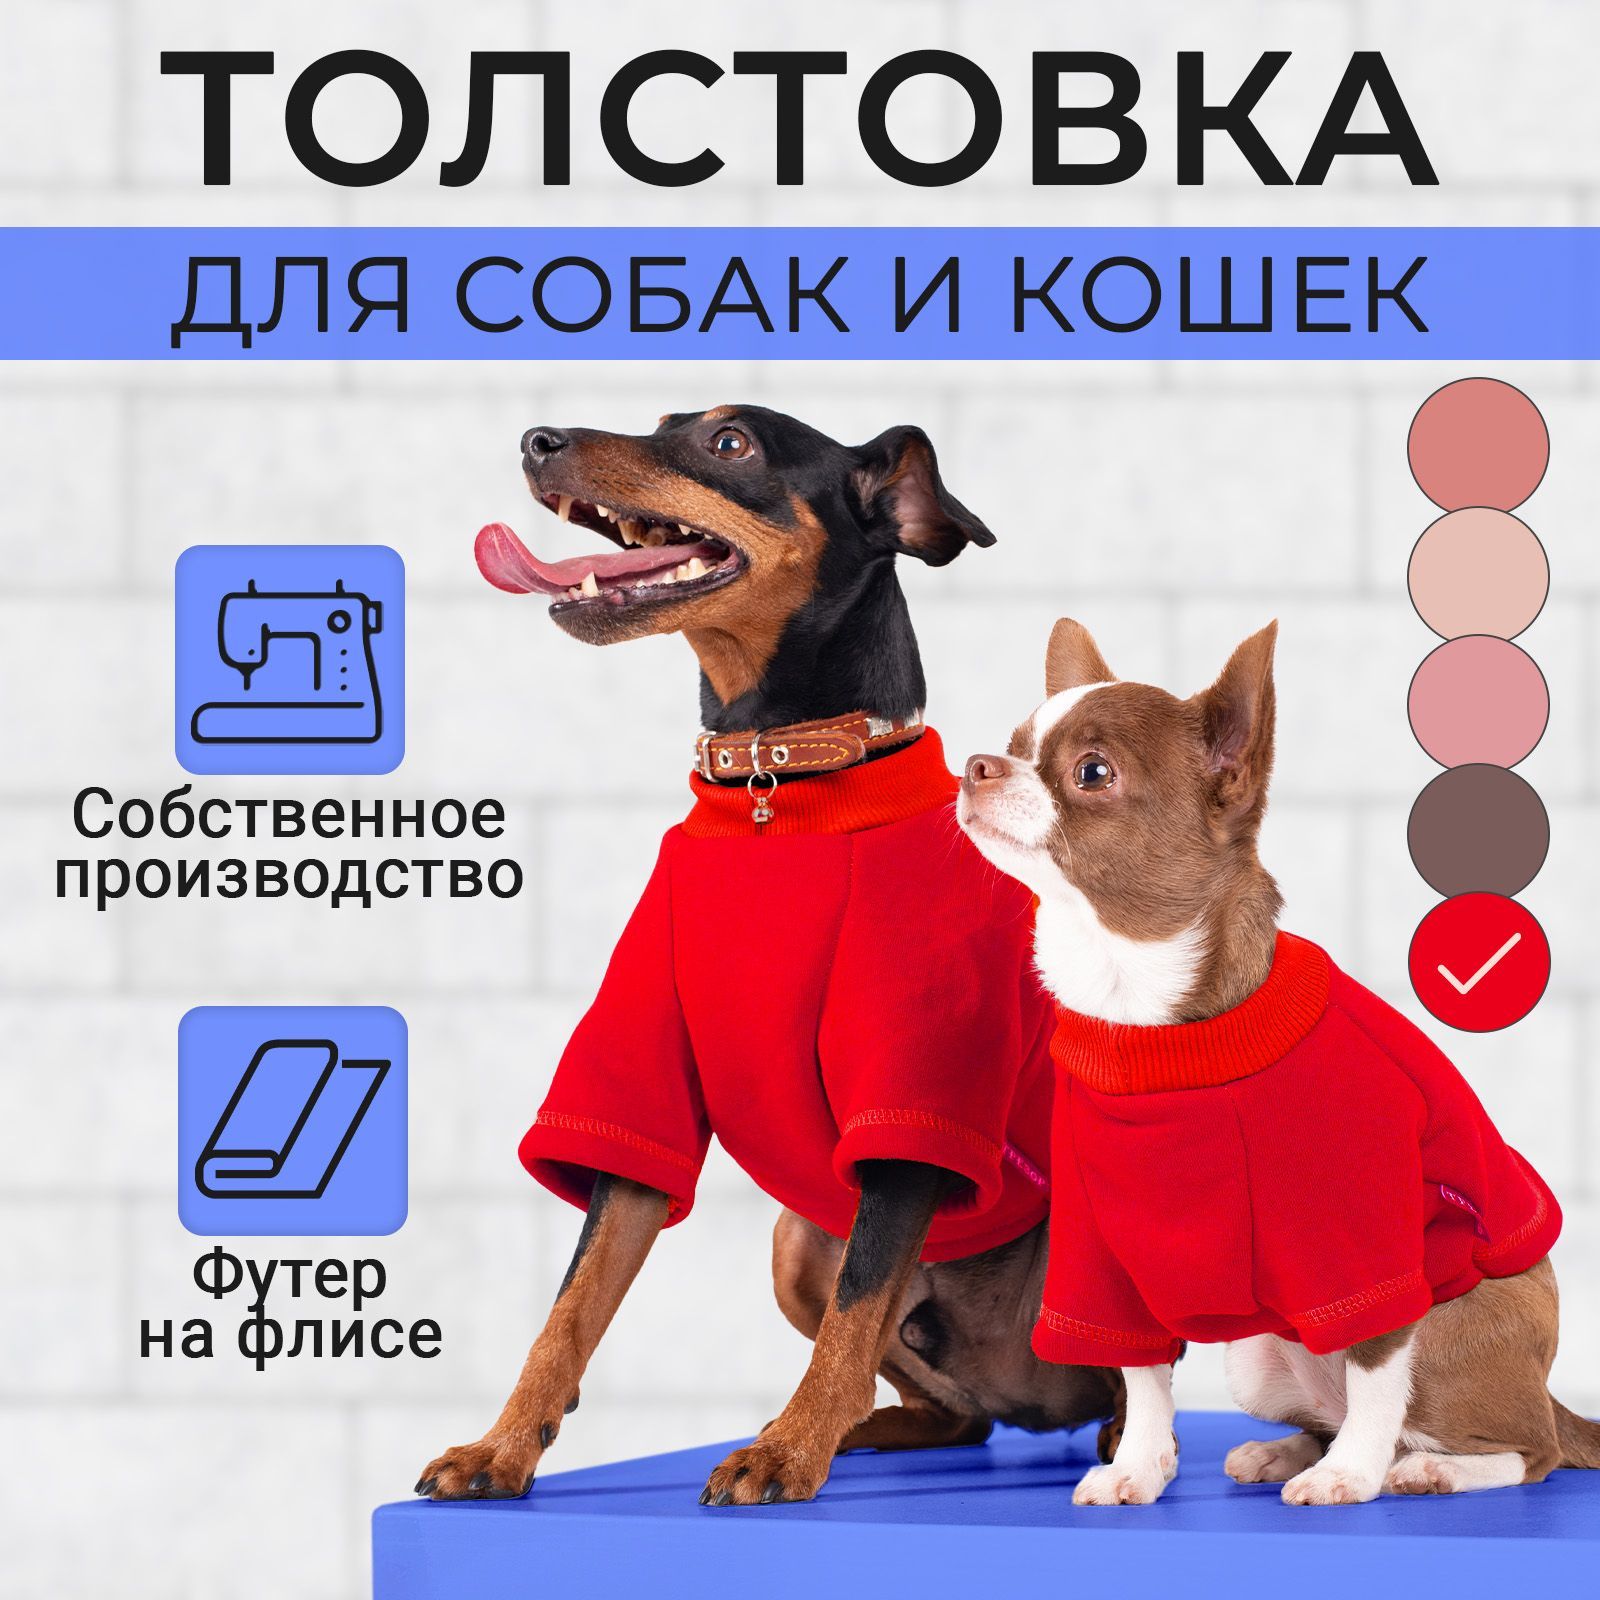 Шьем платье для собаки своими руками - выкройка — Интернет-магазин одежды для собак Zoostyle